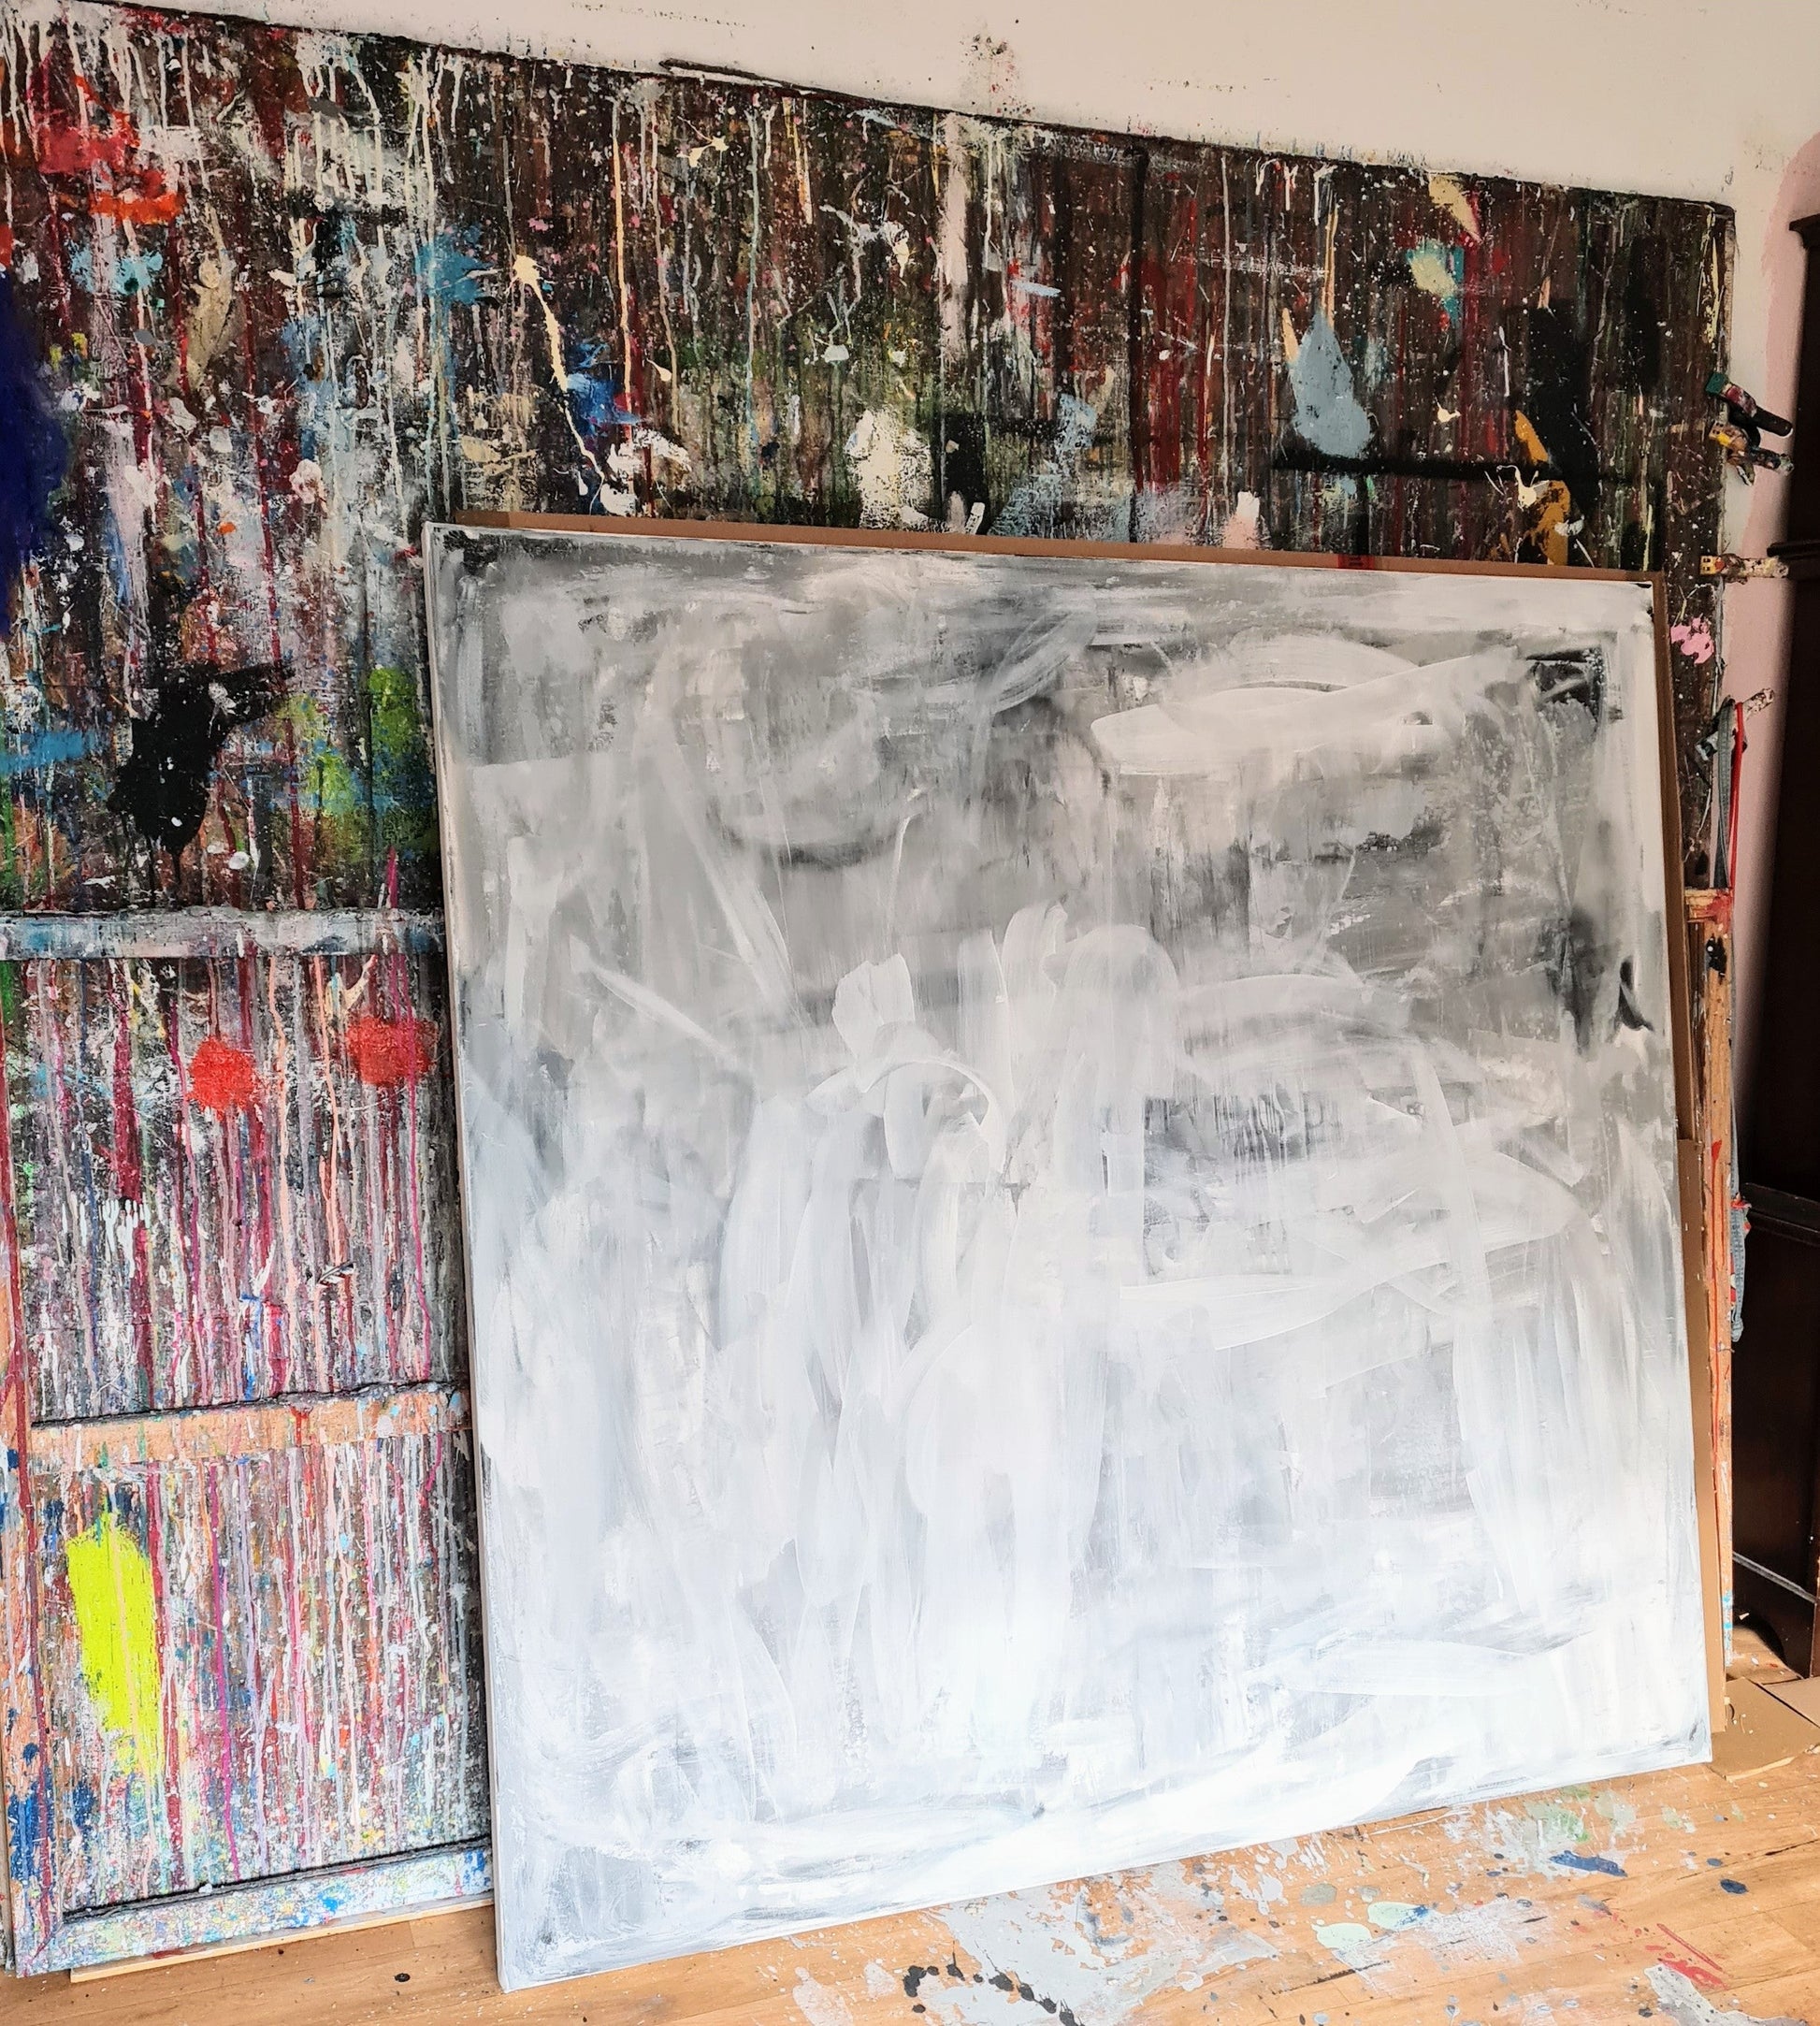 Abstraktes großes Gemälde in Grau- und Weiß - Pusteblume Abstrakte Bilder & moderne Auftragsmalerei, abstrakte große bilder online kaufen, Auftrags Malere